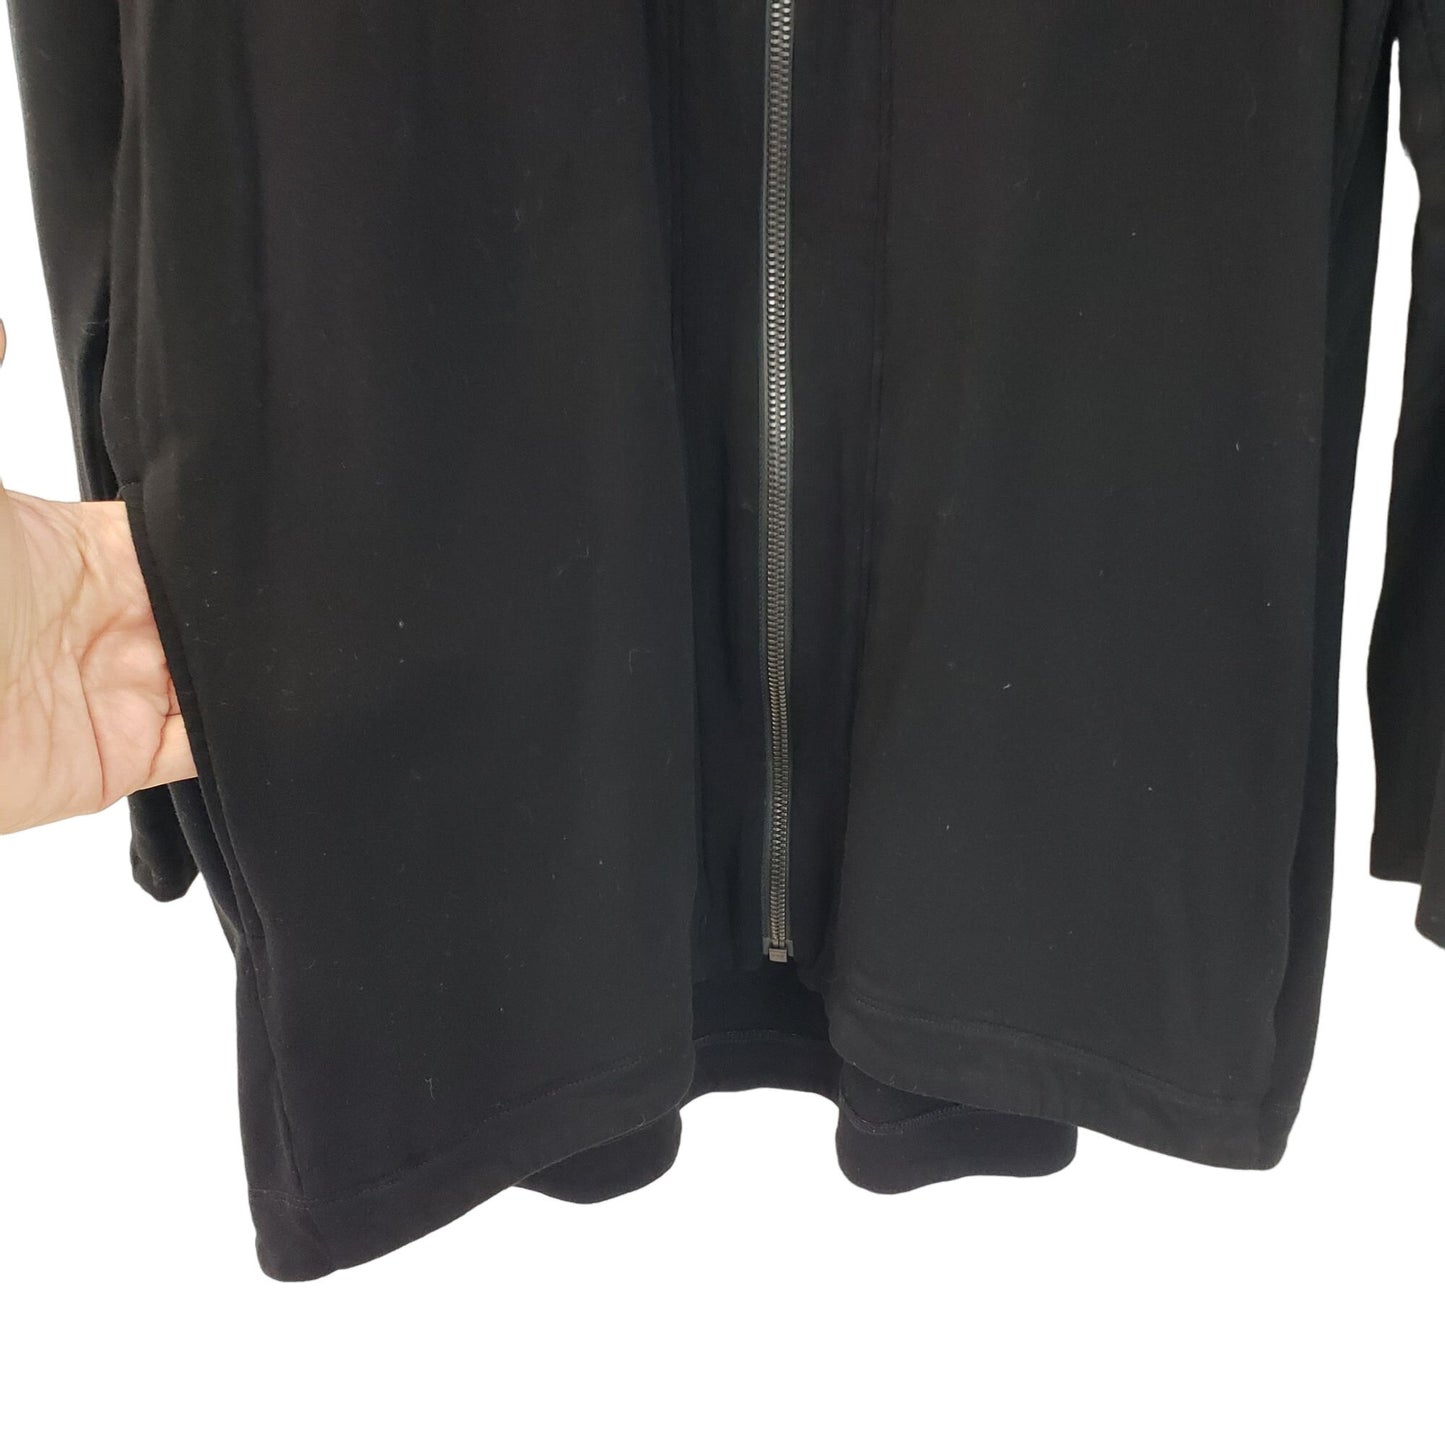 Eileen Fisher Tencel Blend Full Zip Sweatshirt Top Size Small